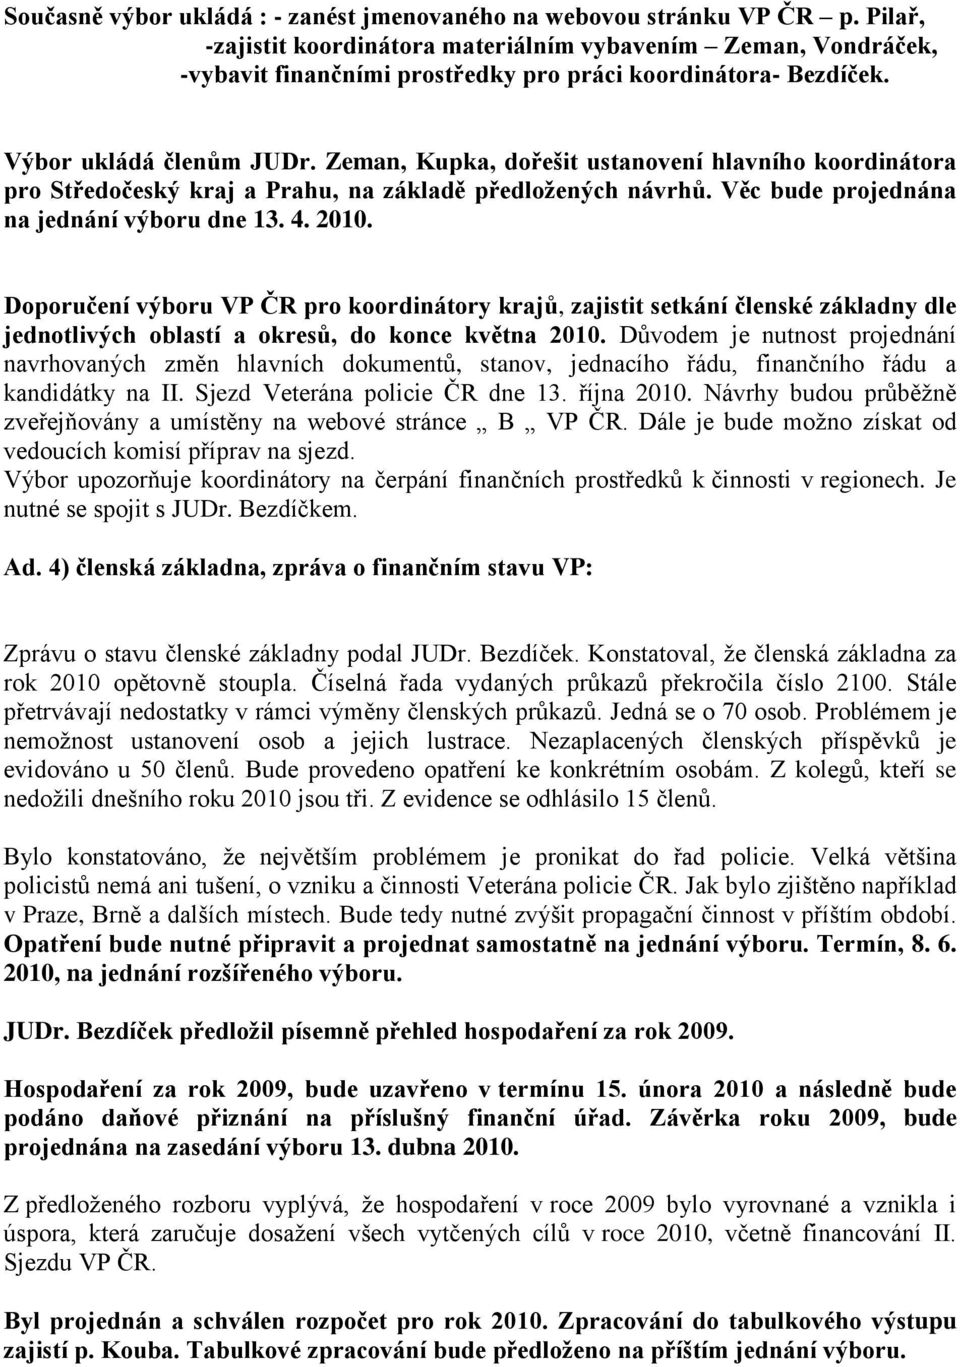 Zeman, Kupka, dořešit ustanovení hlavního koordinátora pro Středočeský kraj a Prahu, na základě předložených návrhů. Věc bude projednána na jednání výboru dne 13. 4. 2010.